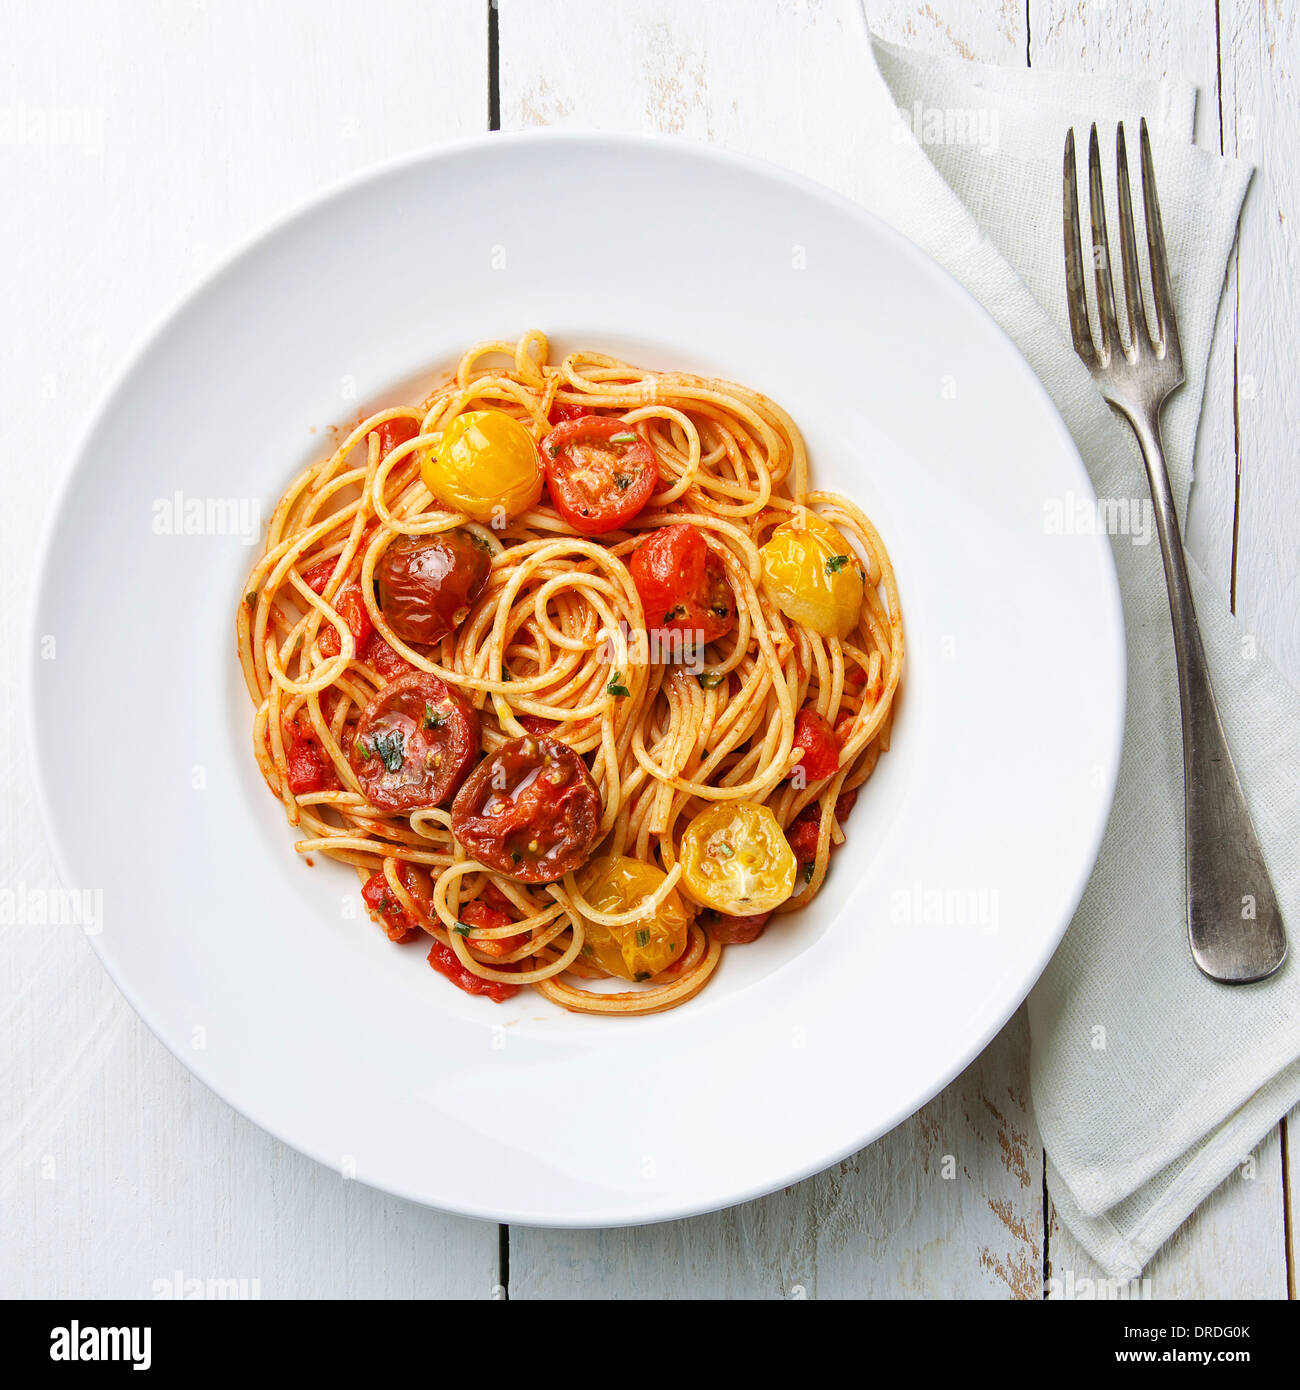 Spaghetti with tomato sauce on white wooden background Stock Photo